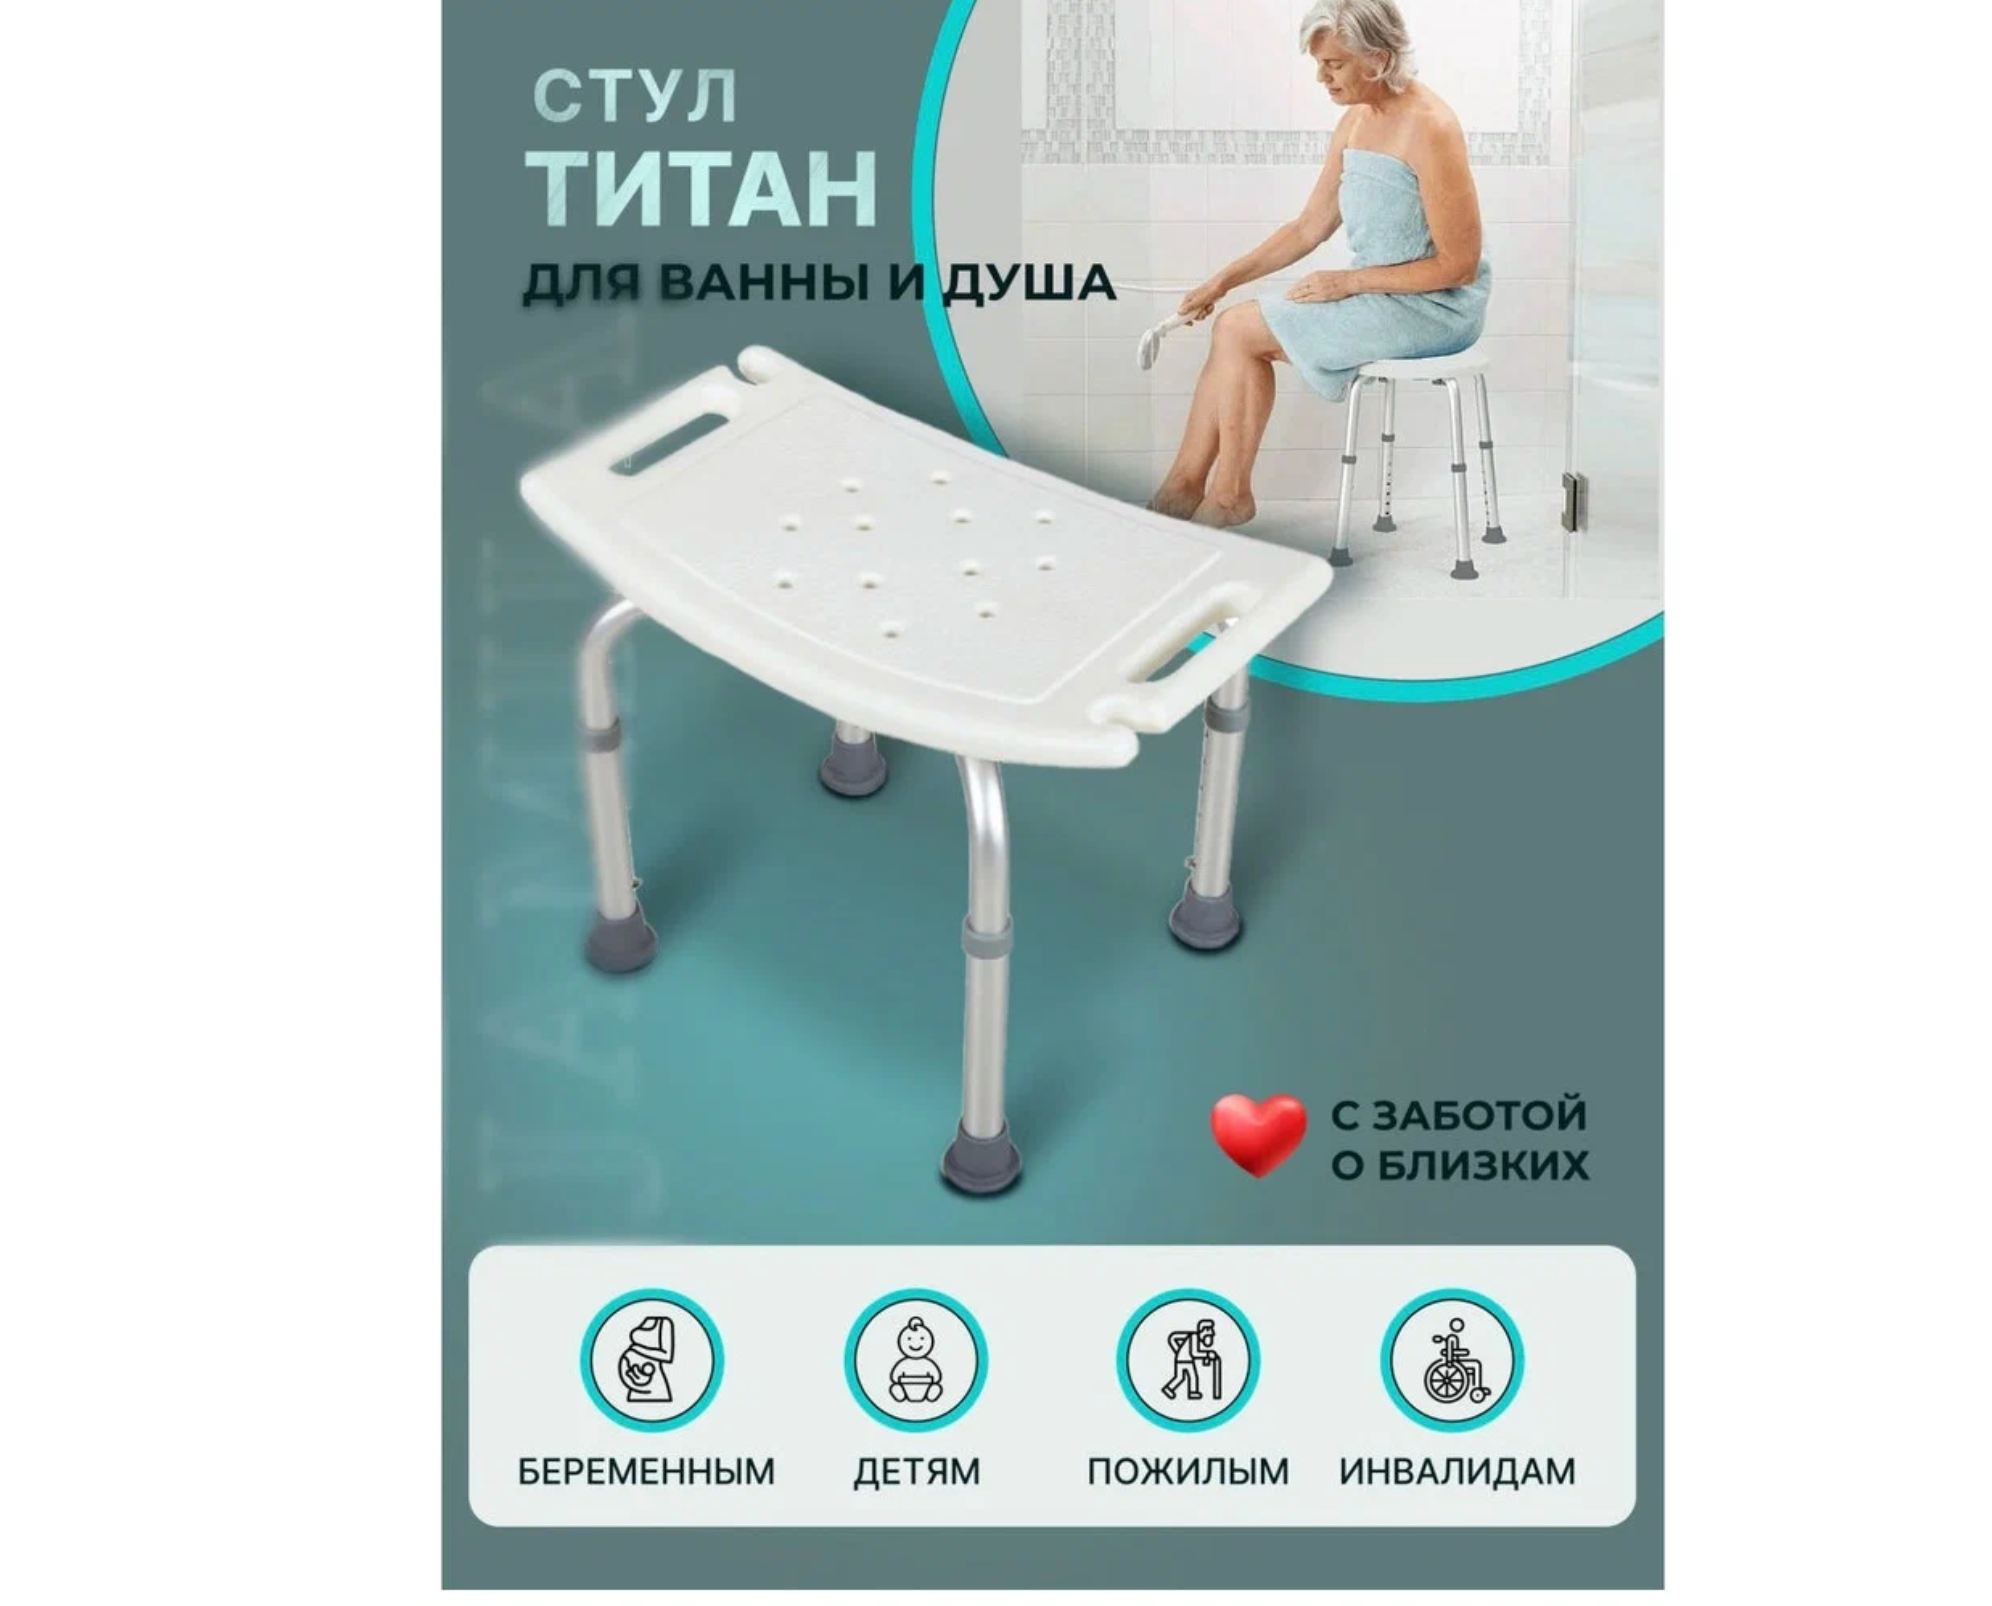 Стул Титан для ванны и душа для купания пожилых, инвалидов, малоподвижных, беременных и детей